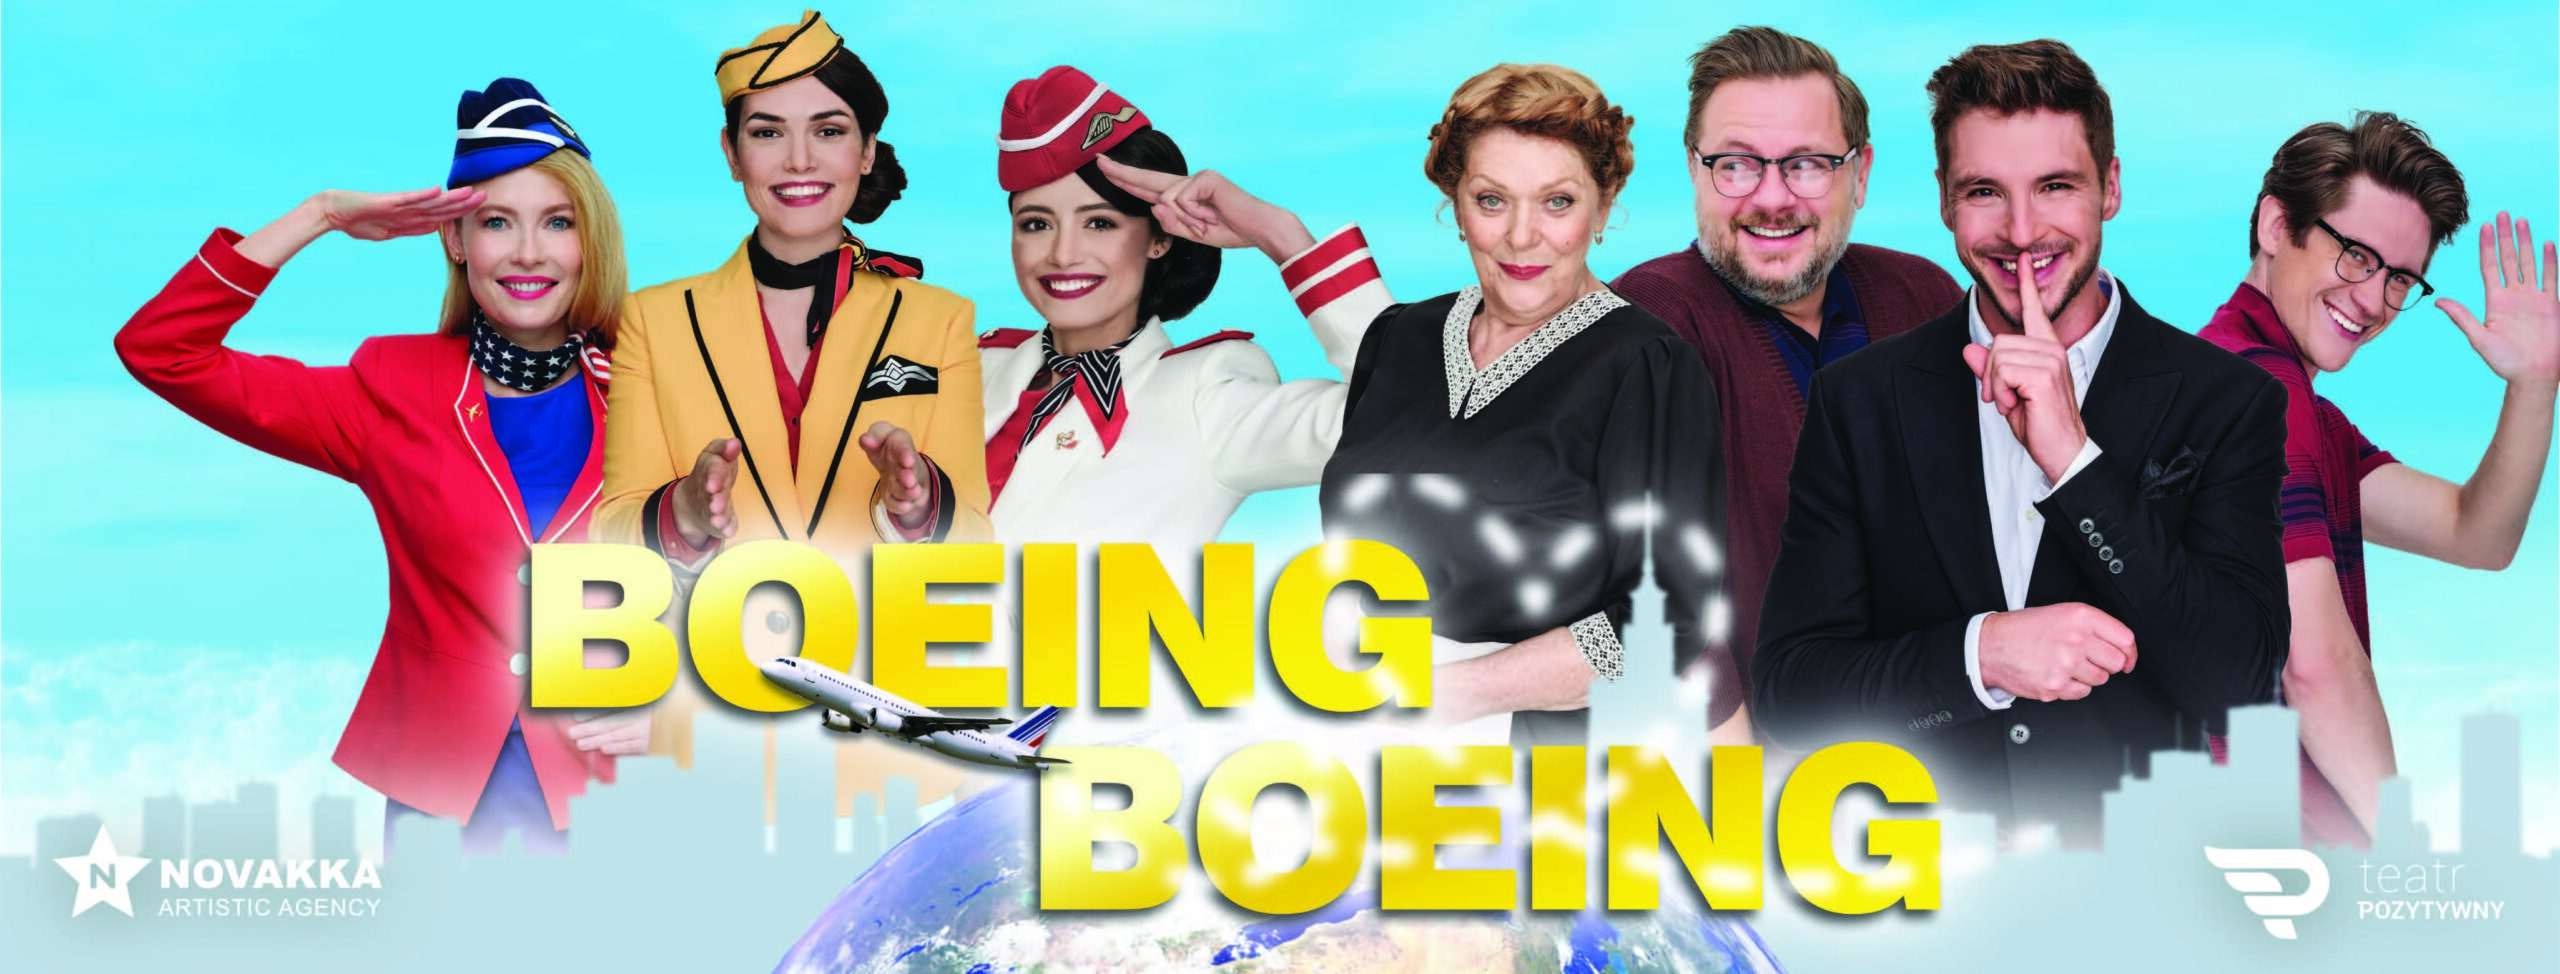 Premierowy „Boeing, Boeing" wyląduje już 4 grudnia. Pilotuje go Impresariat Novakka 1